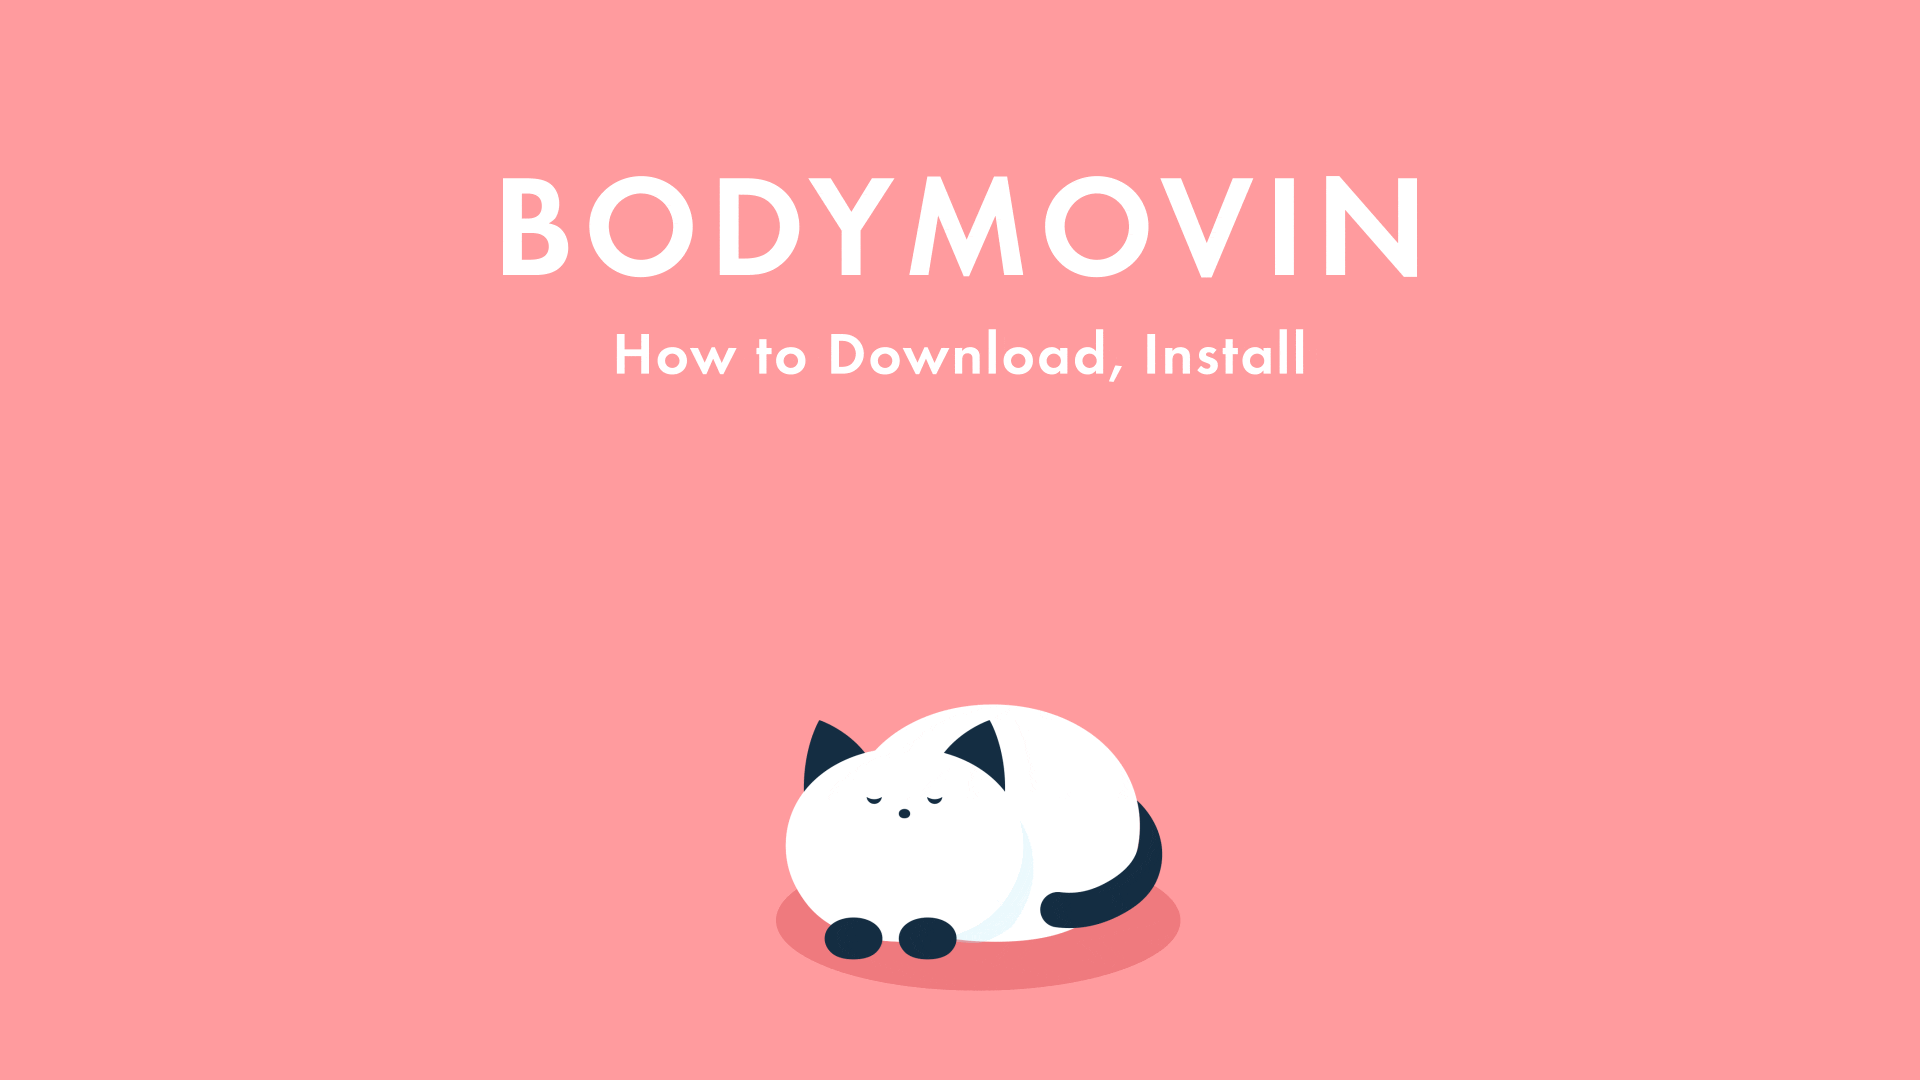 Lottieアニメーションの作成に必要な「Bodymovin」のダウンロード・インストール方法のアイキャッチ画像